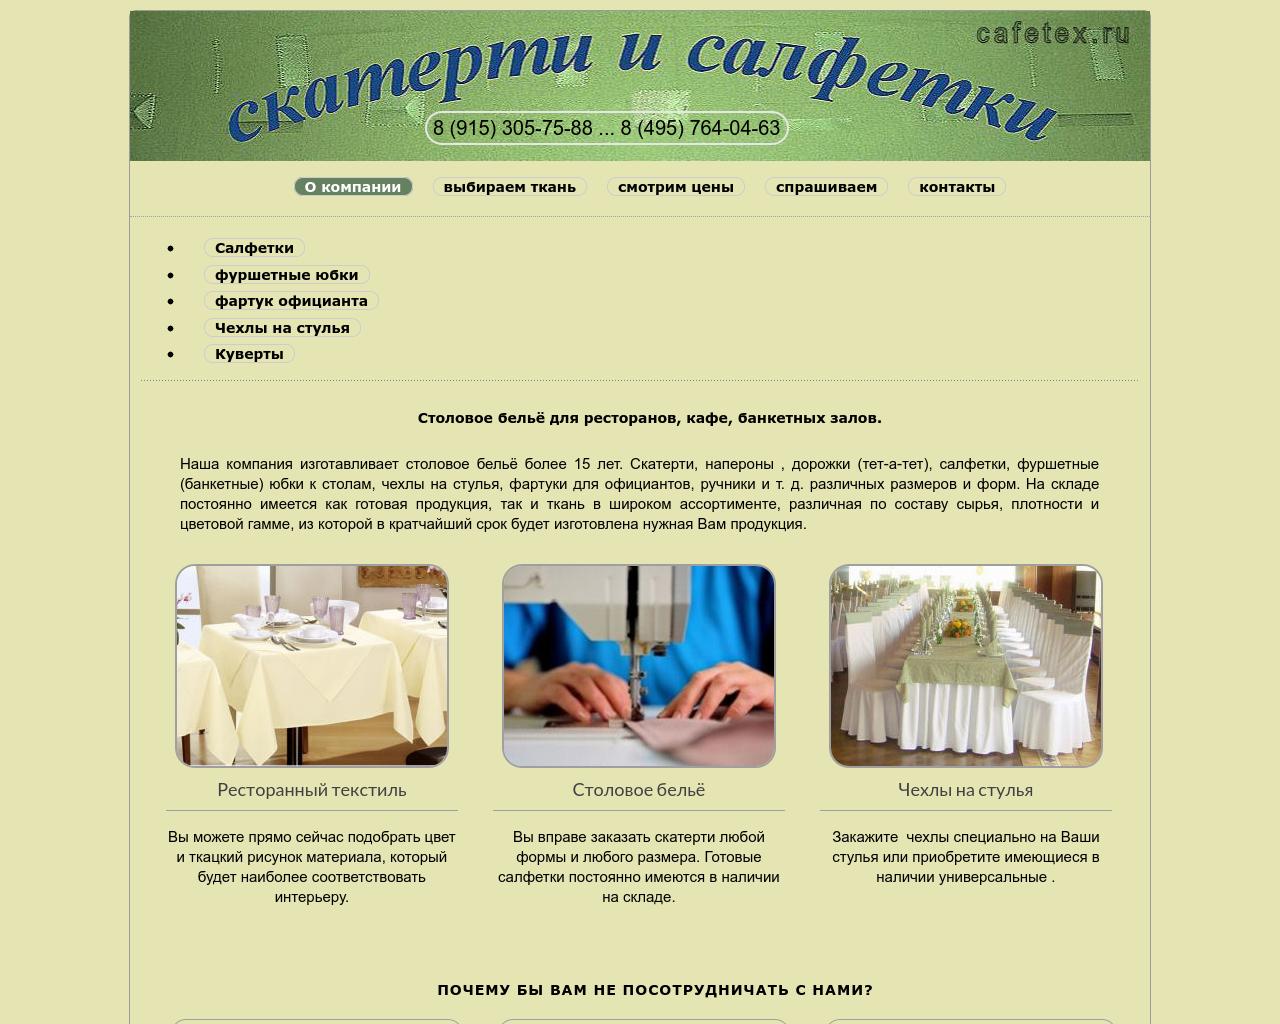 Изображение сайта cafetex.ru в разрешении 1280x1024